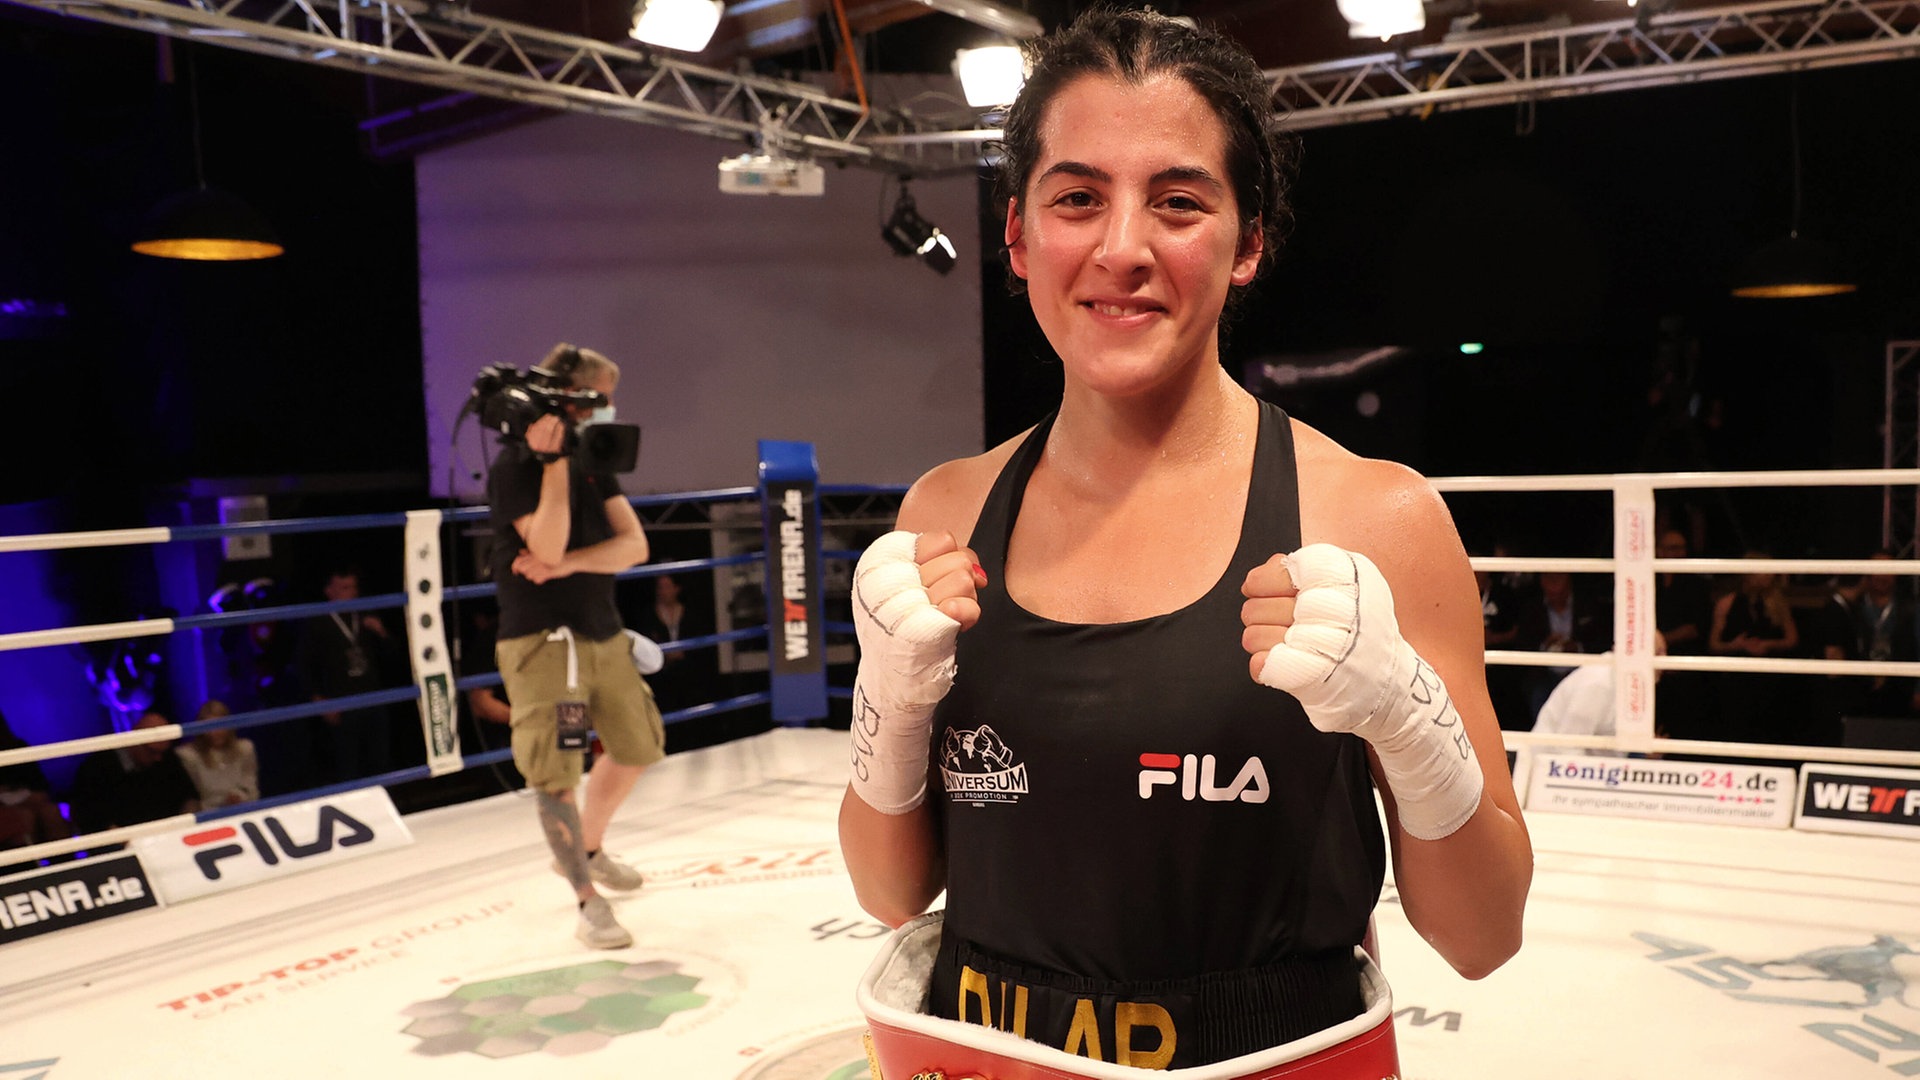 Dilar Kisikyol Liebe zum Boxsport und Kampf für soziale Gerechtigkeit NDR.de - Sport